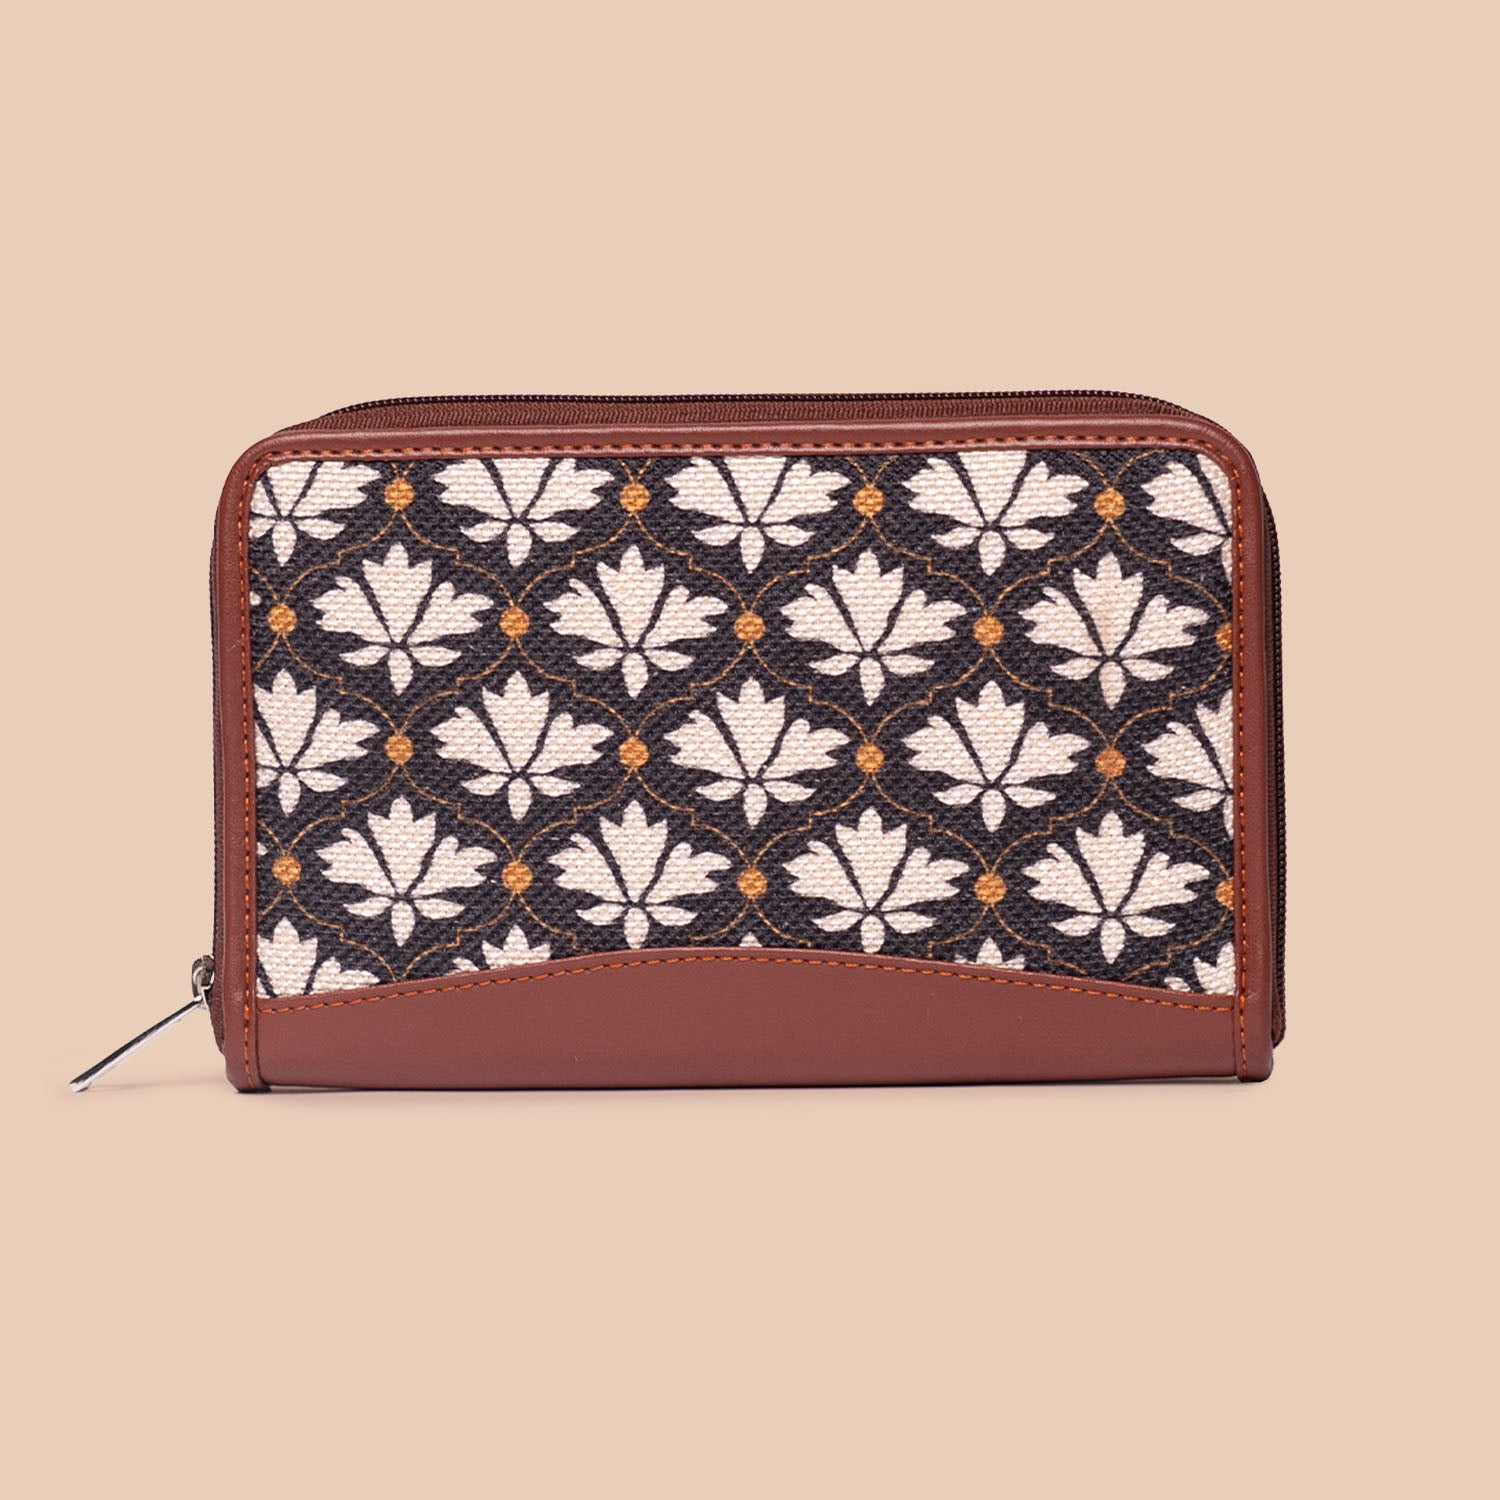 Bidri kaiser - Luna Handbag & Chain Wallet Combo